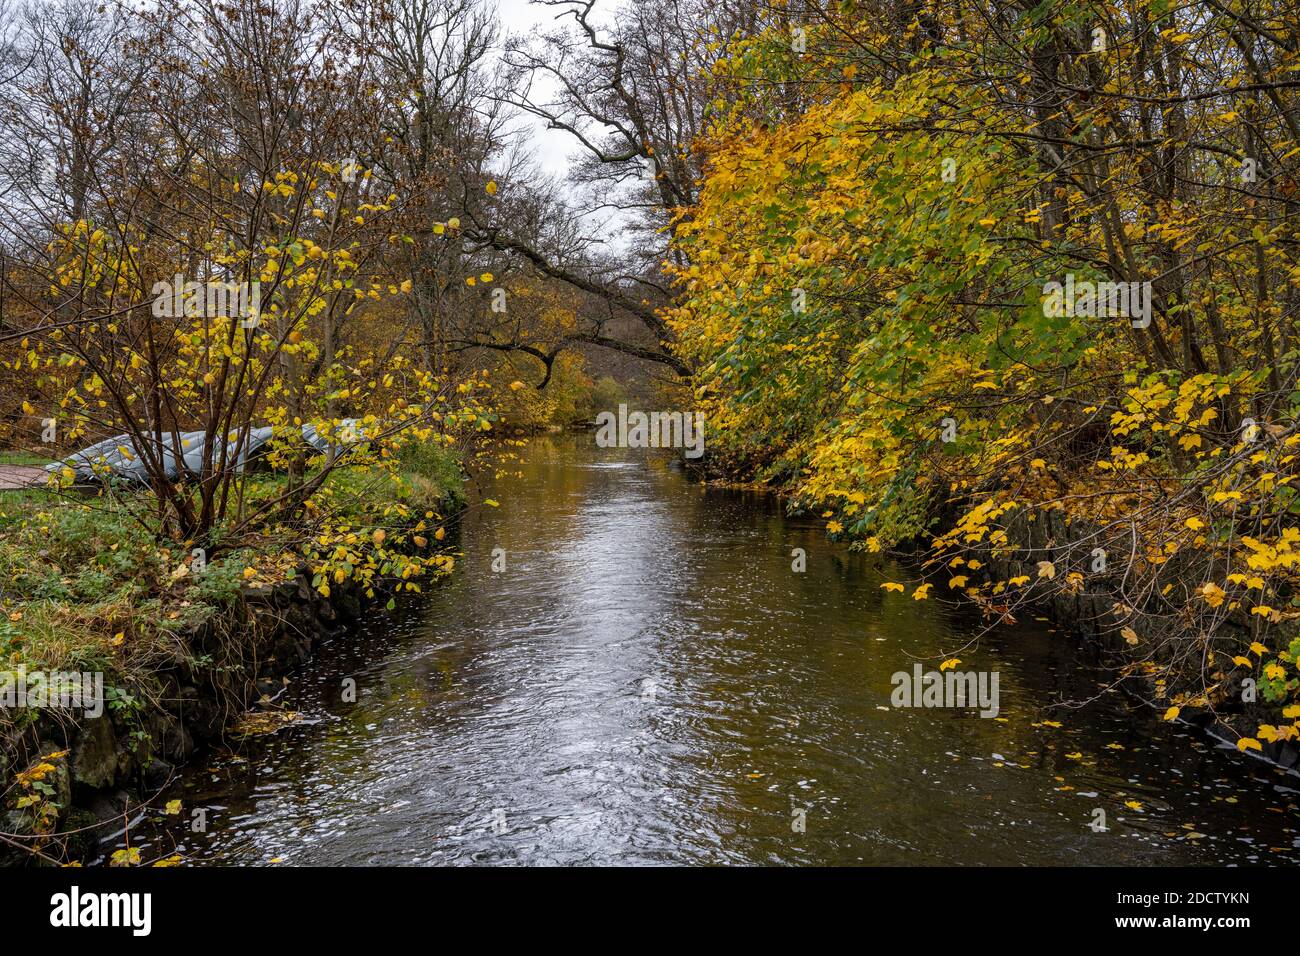 Une rivière flottant à travers une forêt d'automne colorée. Photo du comté de Scania, Suède Banque D'Images